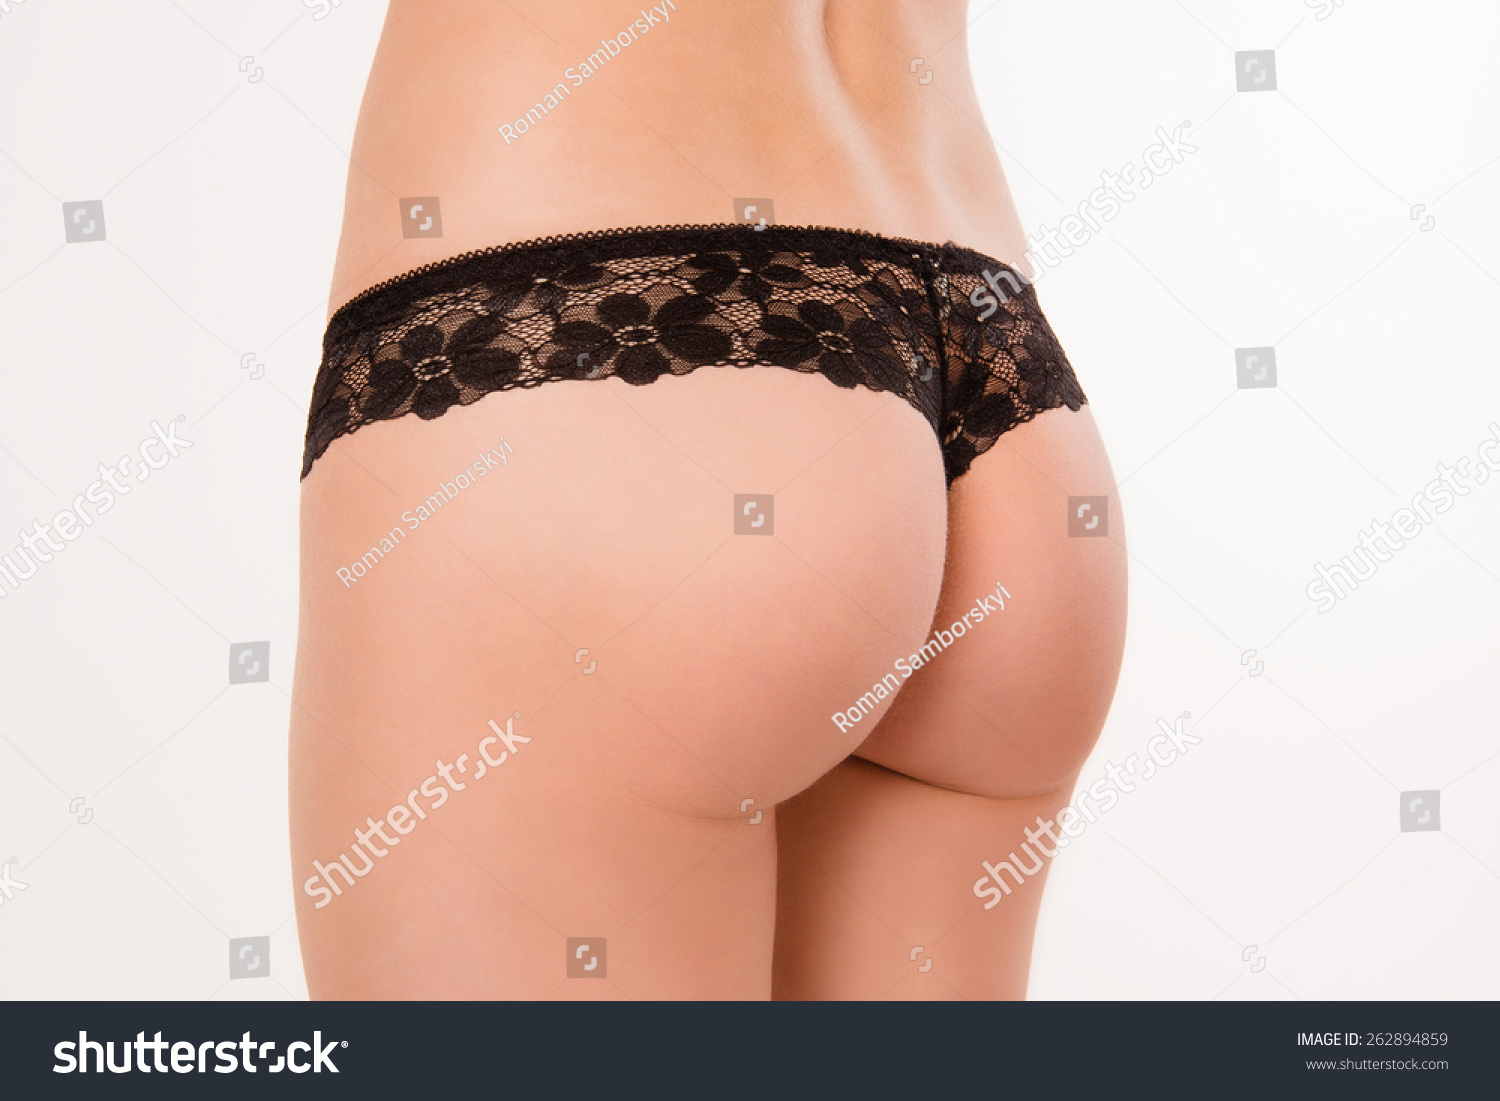 Nice Ass Photos